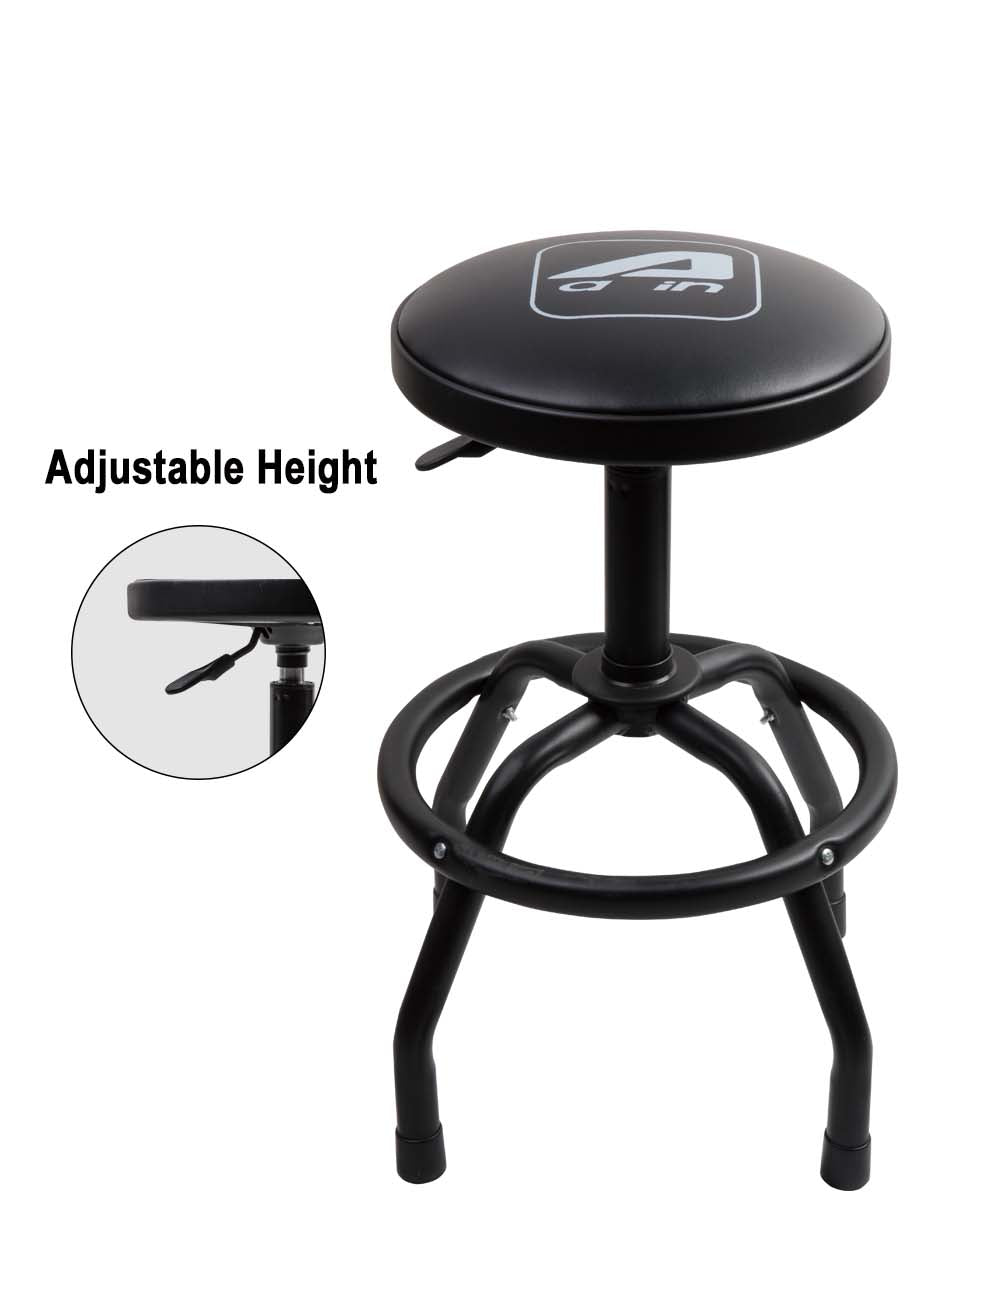 Adjustable Shop Stool with Backrest, Black